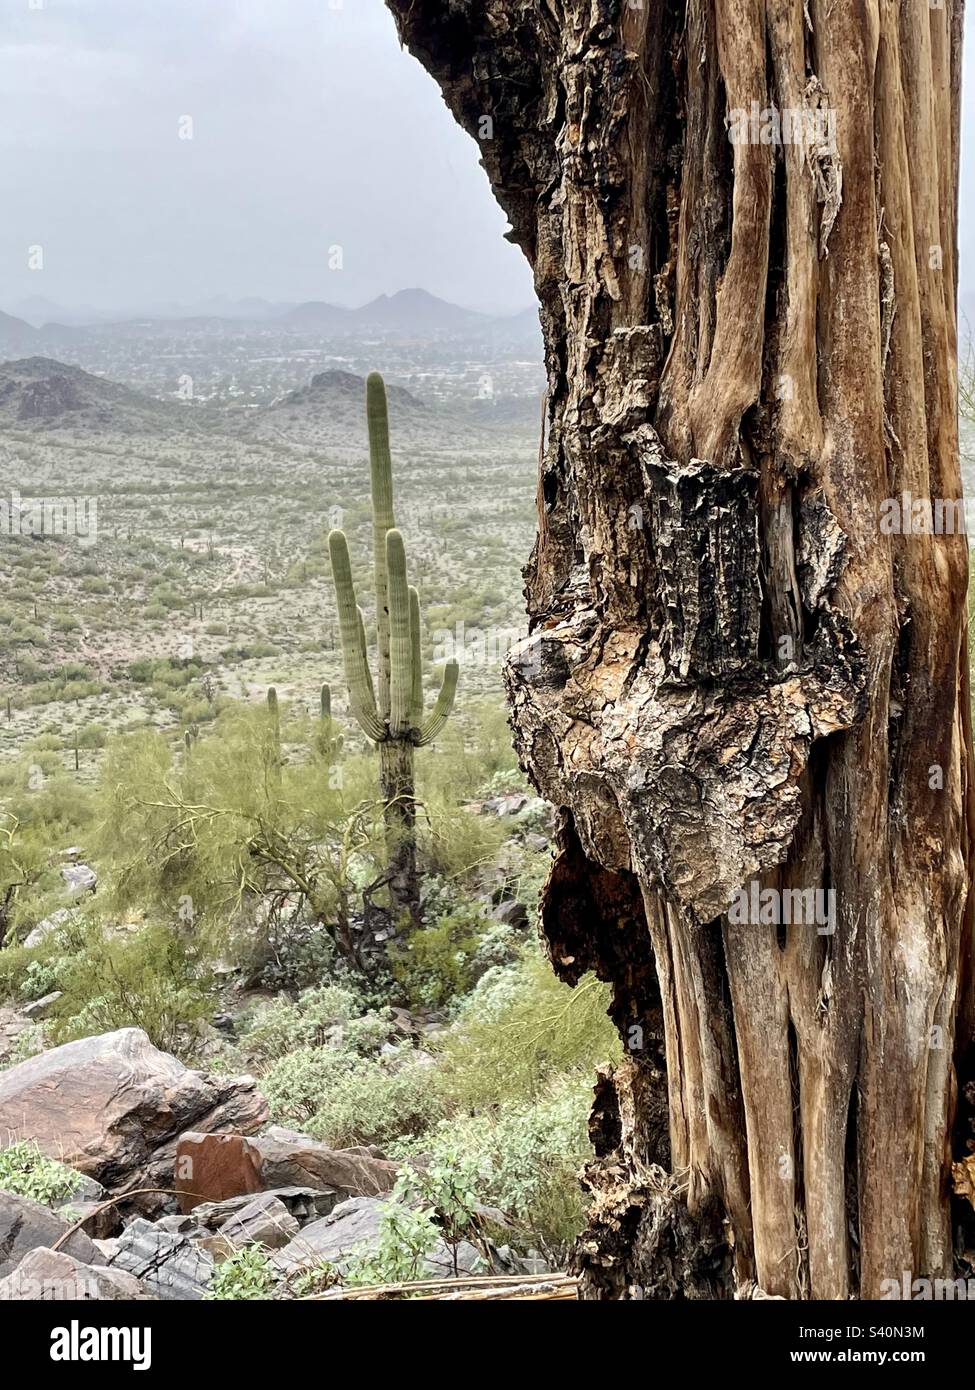 Un forte, pieno di vita Saguaro Cactus si trova dietro le nervature di canna ossea del saguaro morto. Phoenix Mountain Preserve, Arizona Foto Stock